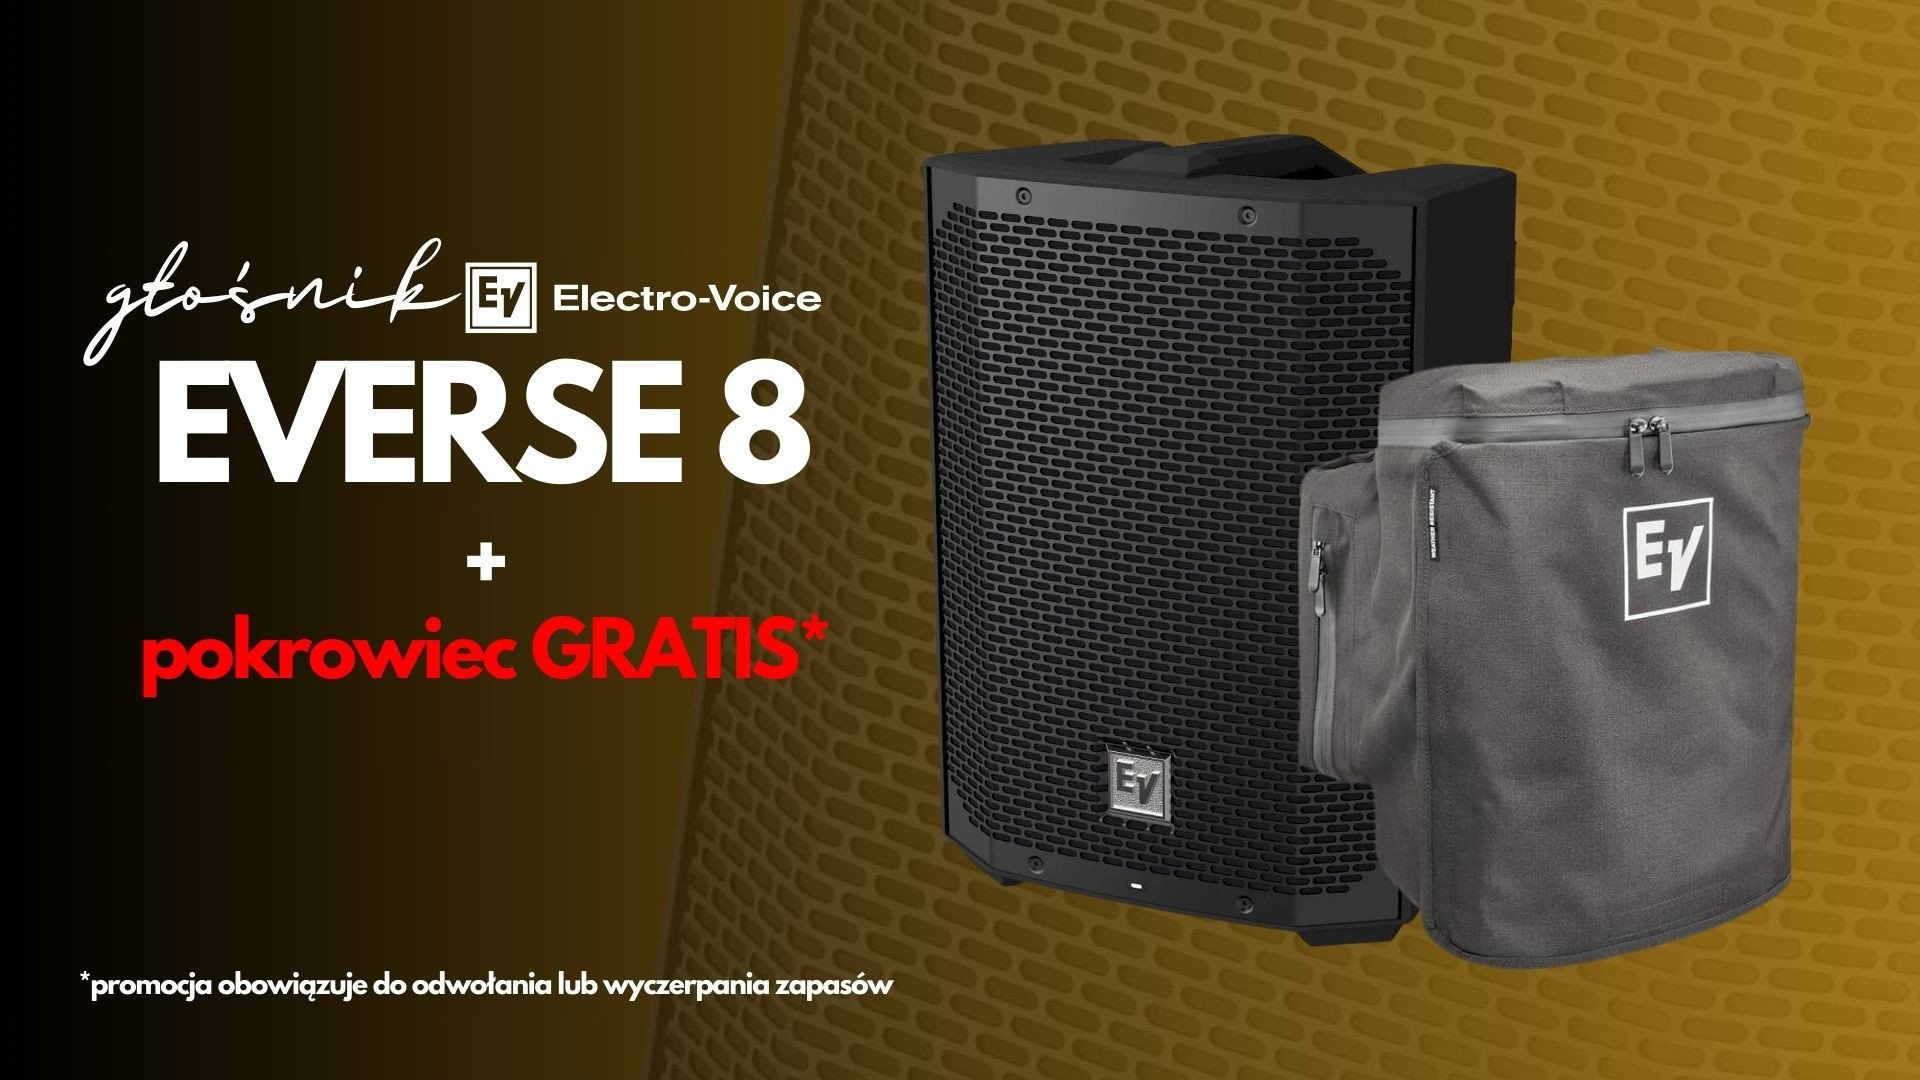 Kup głośnik Electro-Voice EVERSE8 i odbierz pokrowiec GRATIS!